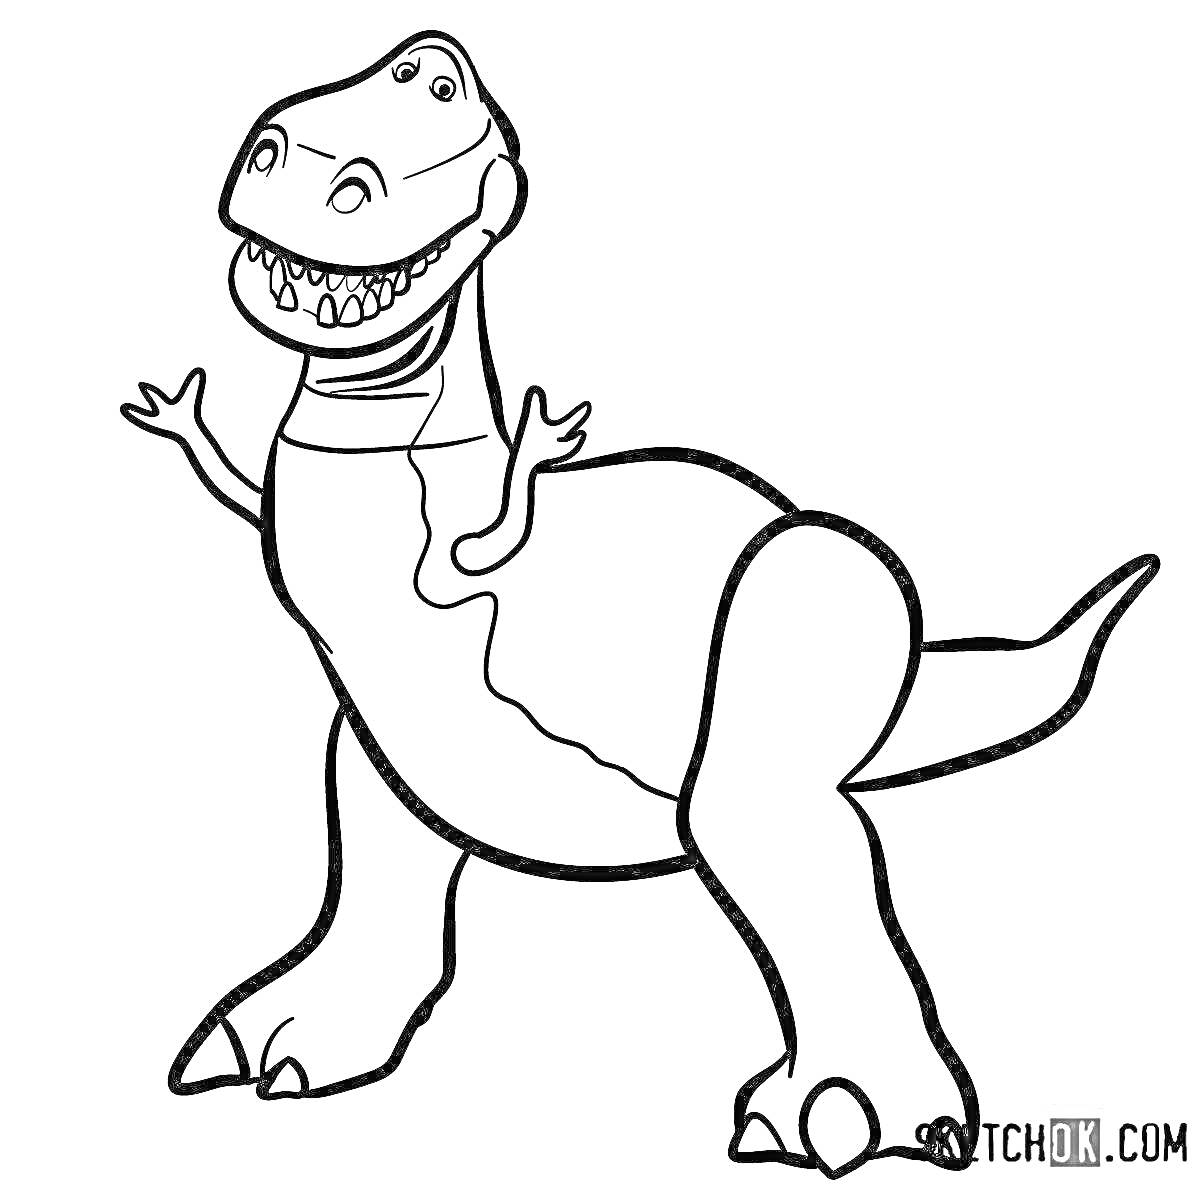 Раскраска Динозавр на задних лапах с широкой улыбкой